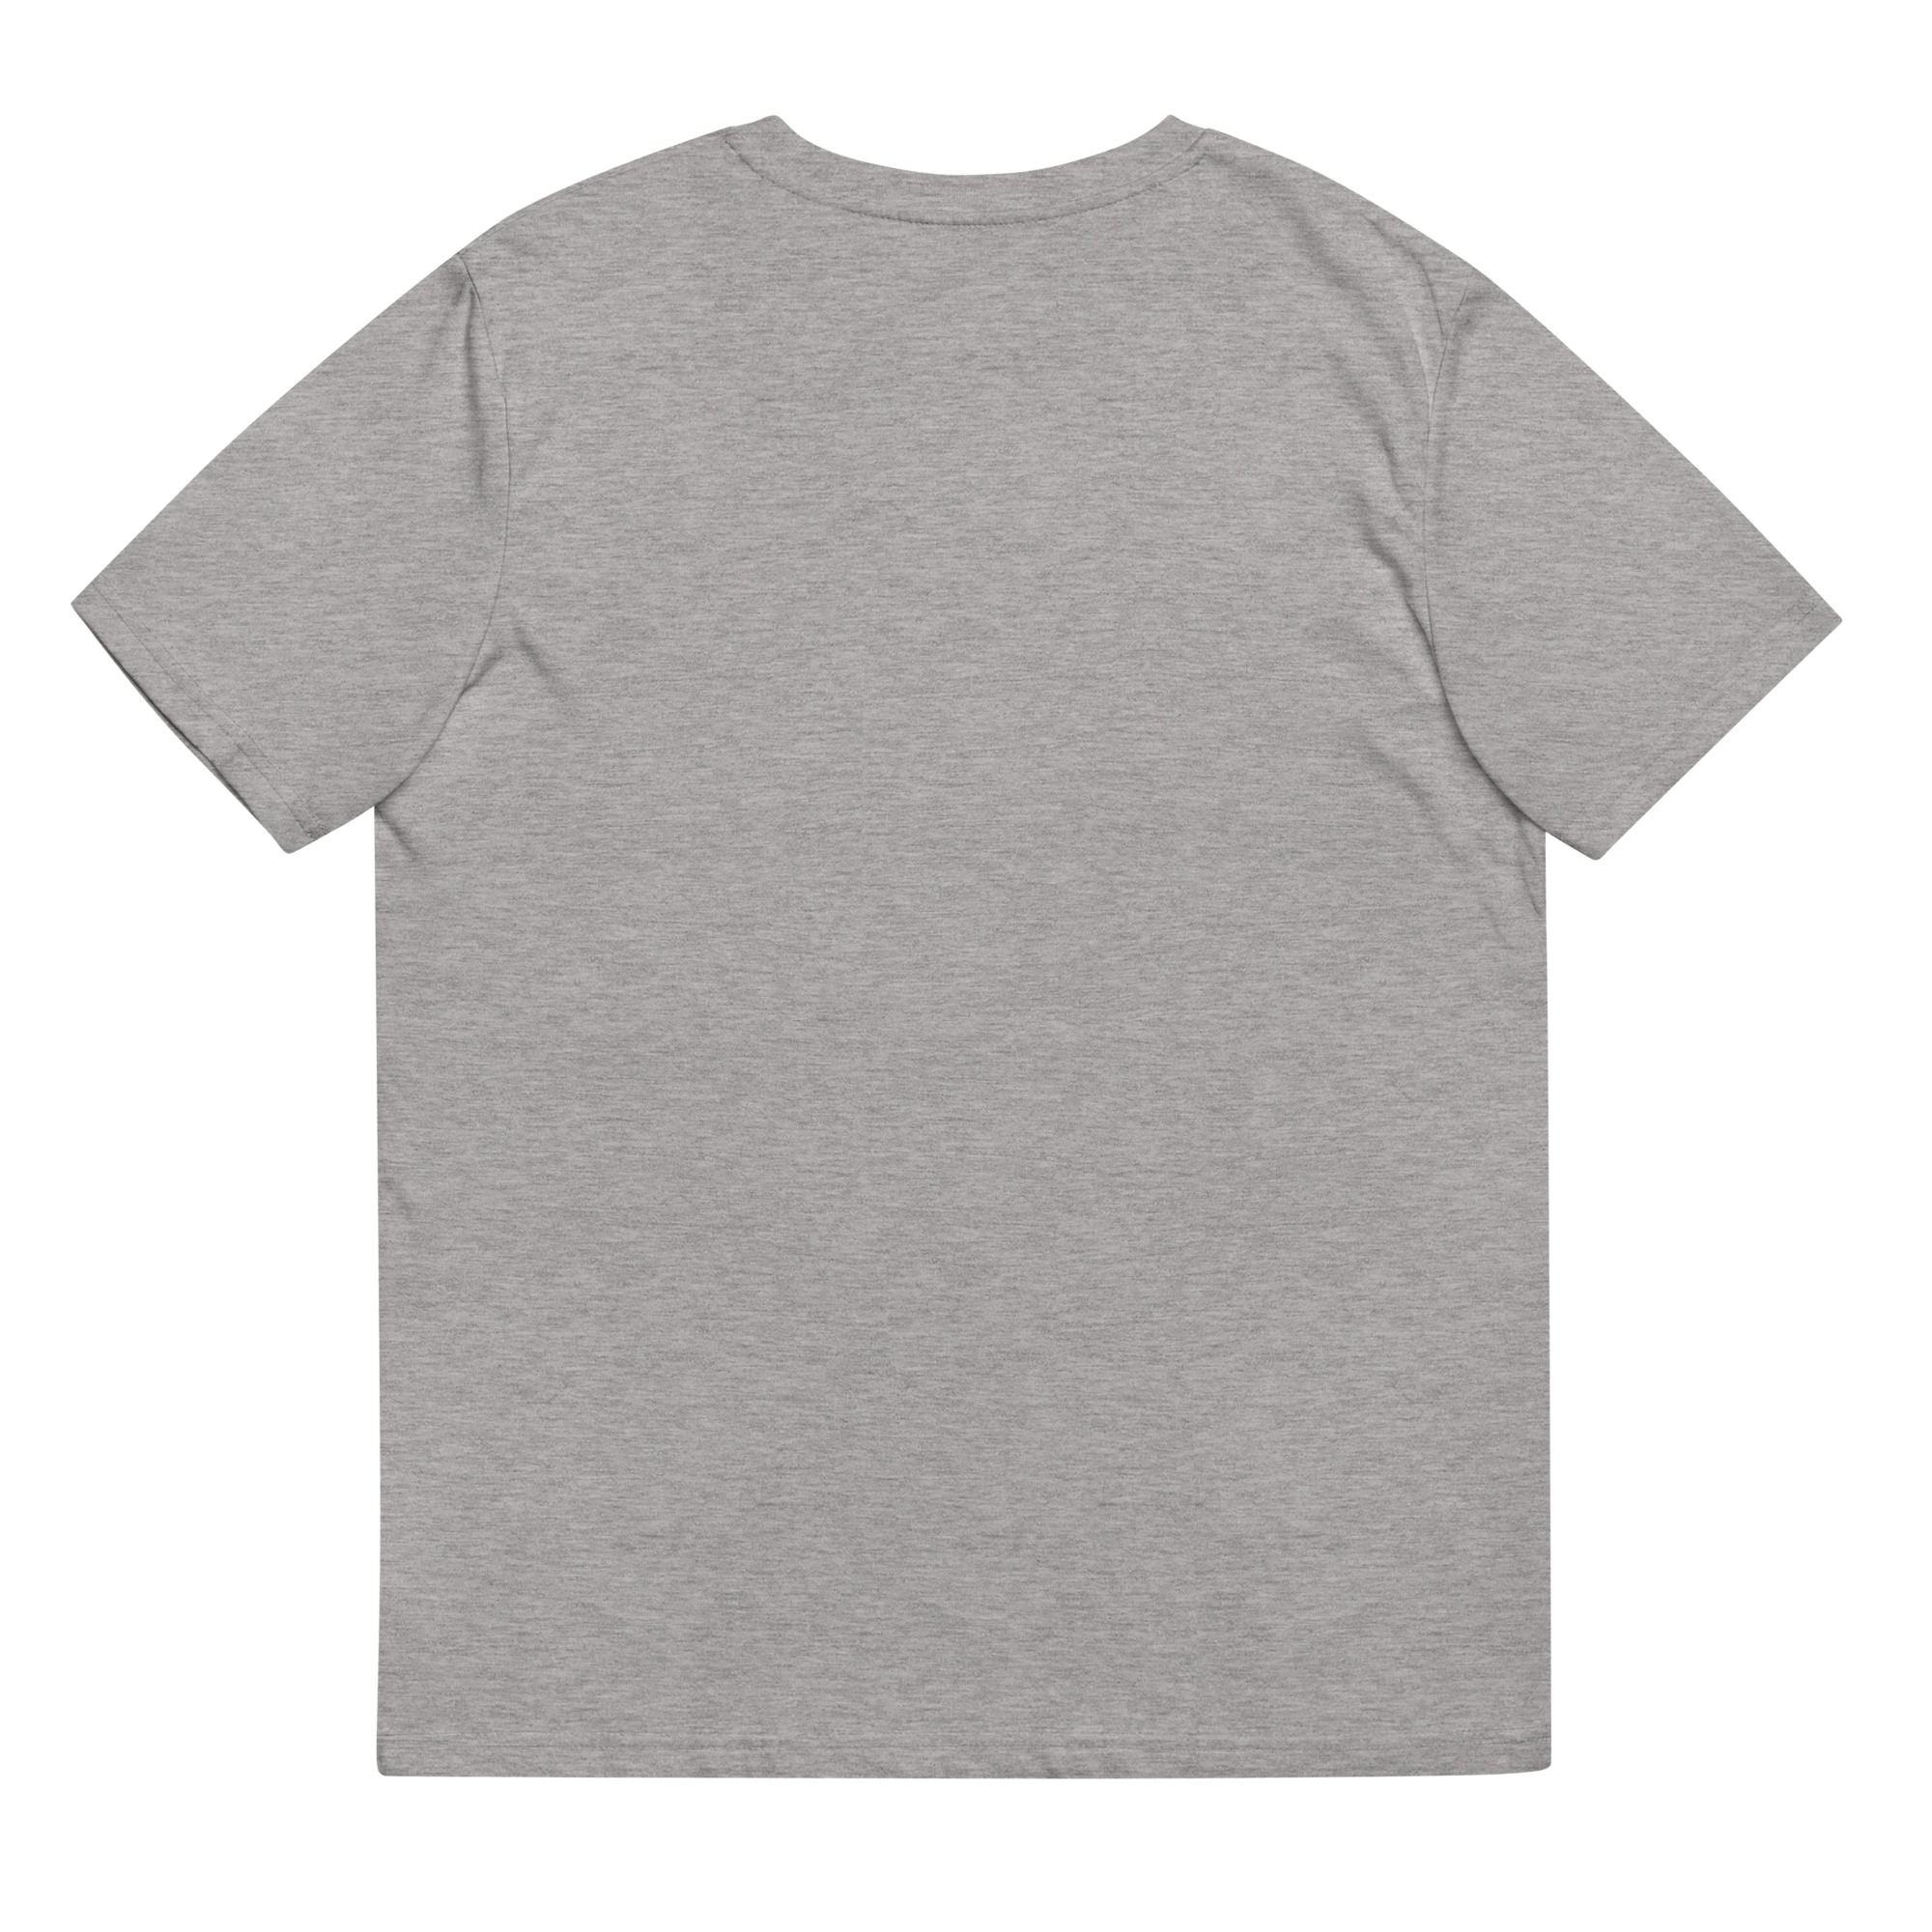 DICKBARSCH Unisex-Bio-Baumwoll-T-Shirt